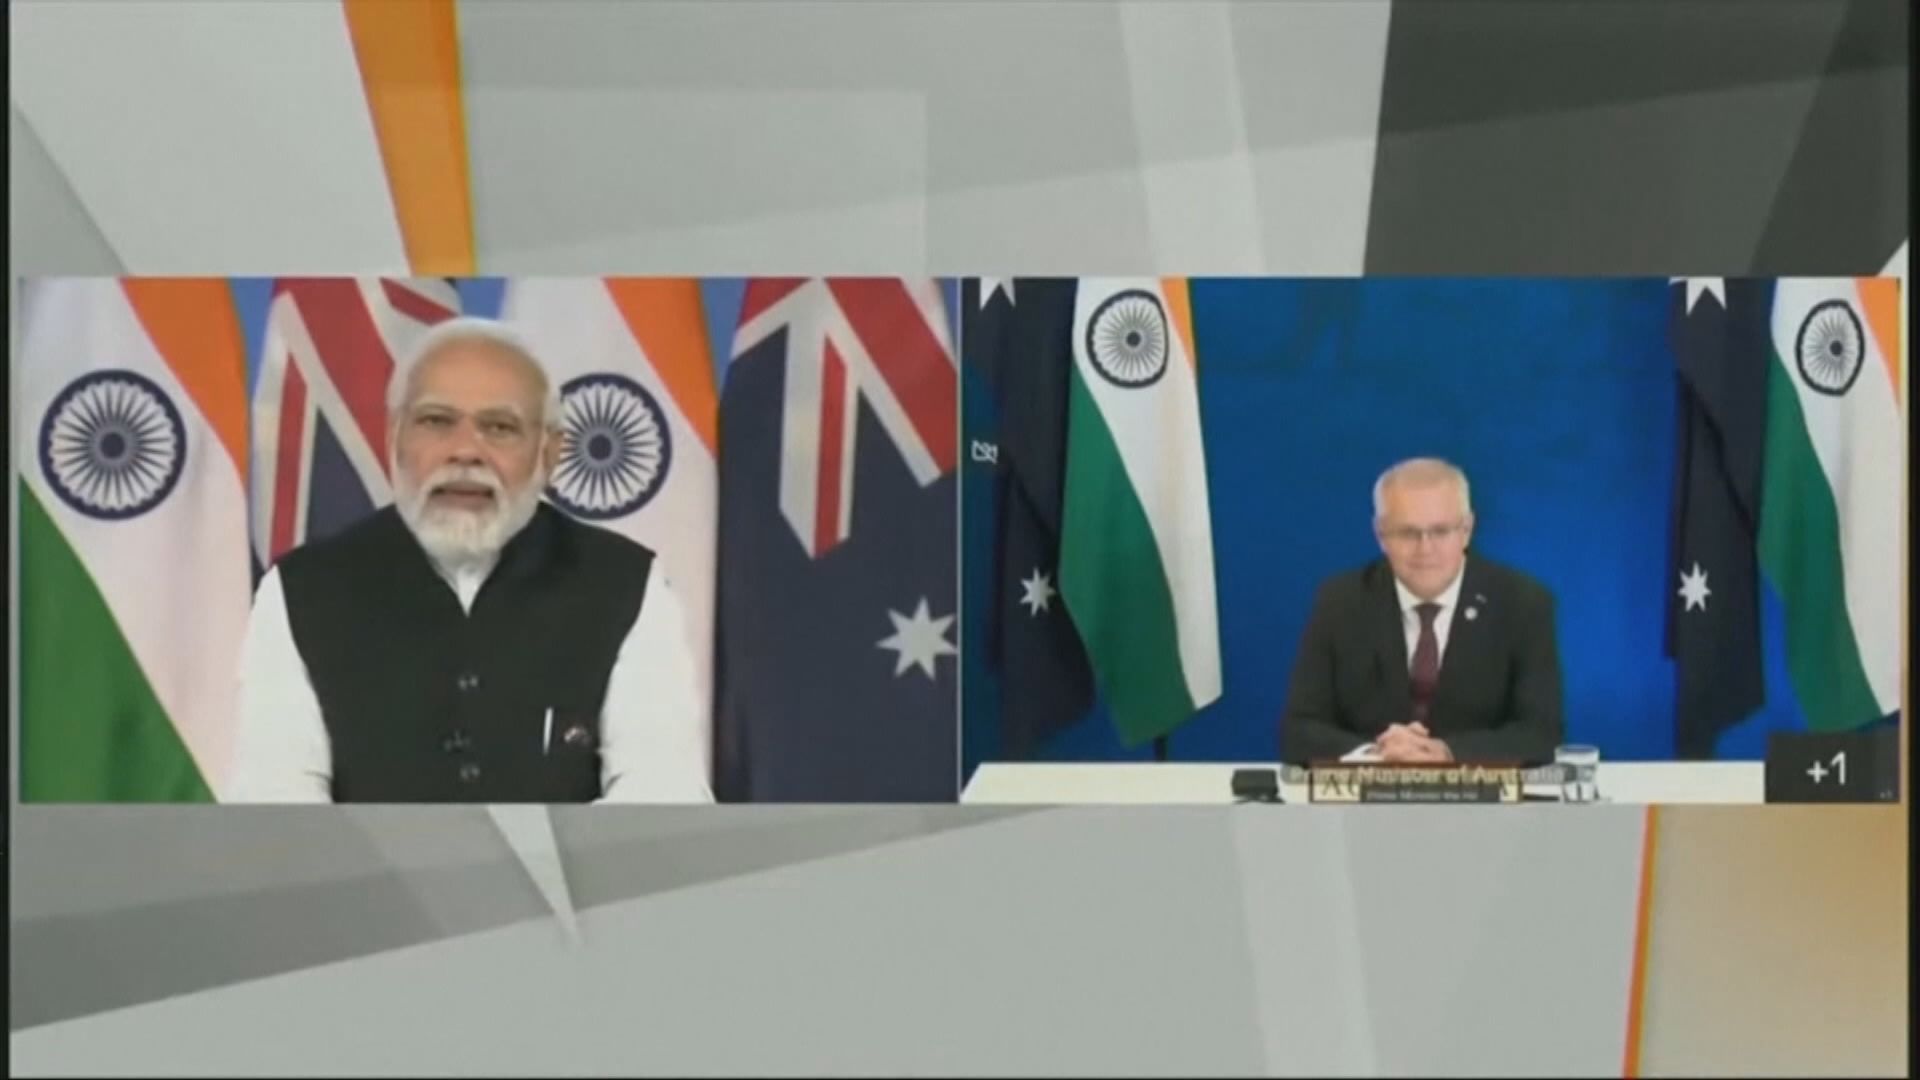 印度稱莫里森諒解印度在俄烏戰事的立場